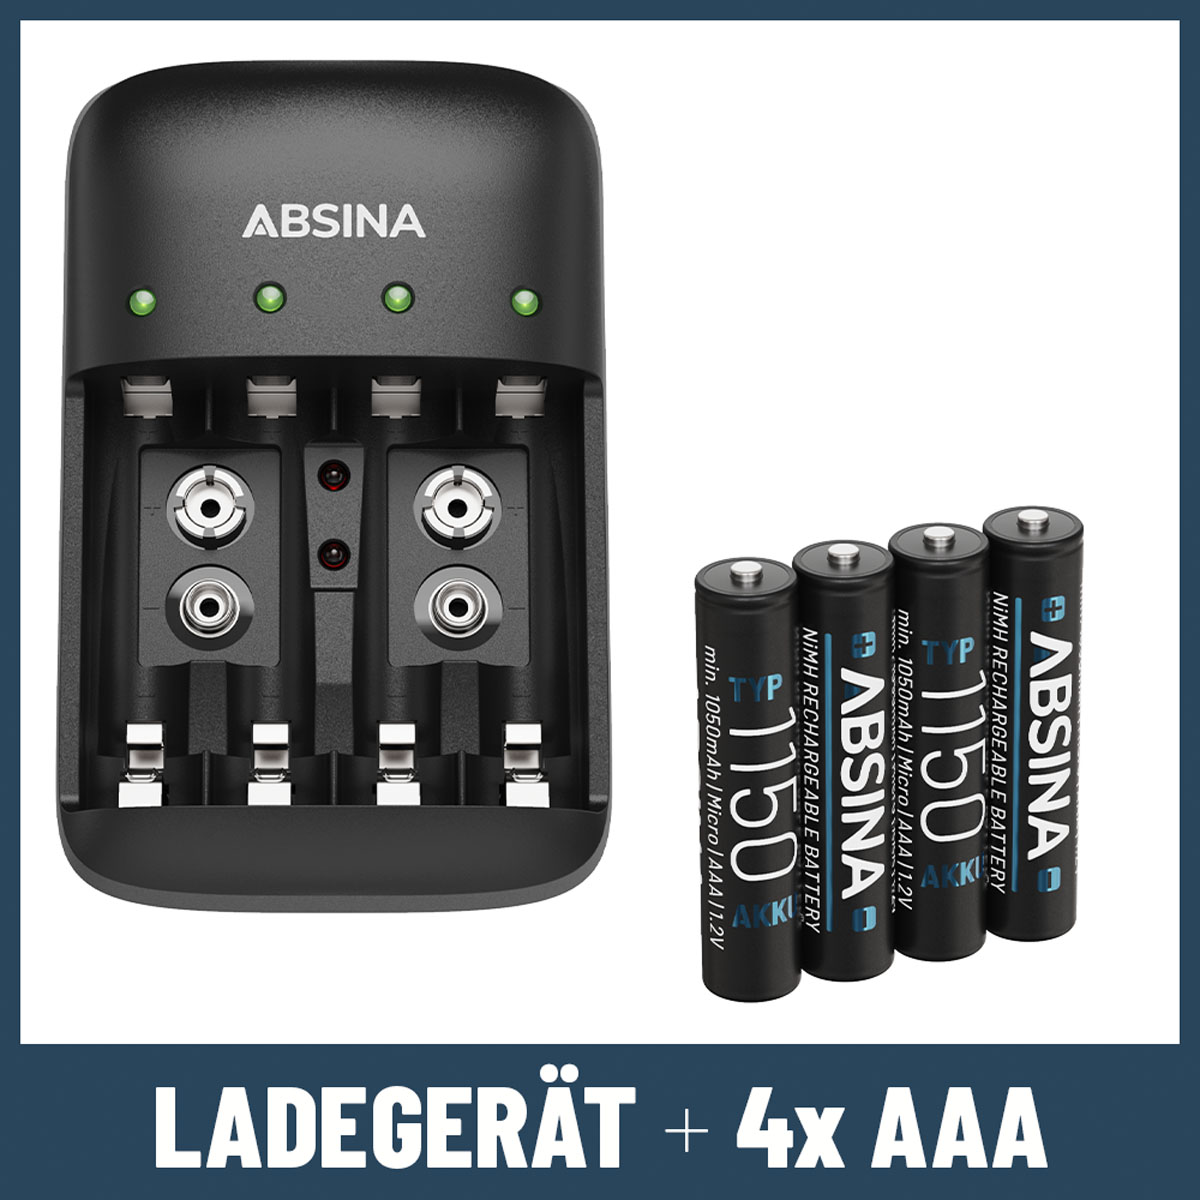 1150 AA, Micro Akkus & AAA + Ladegerät Universal, X4 AAA für inkl. 9V Ladegerät Typ 4x schwarz ABSINA